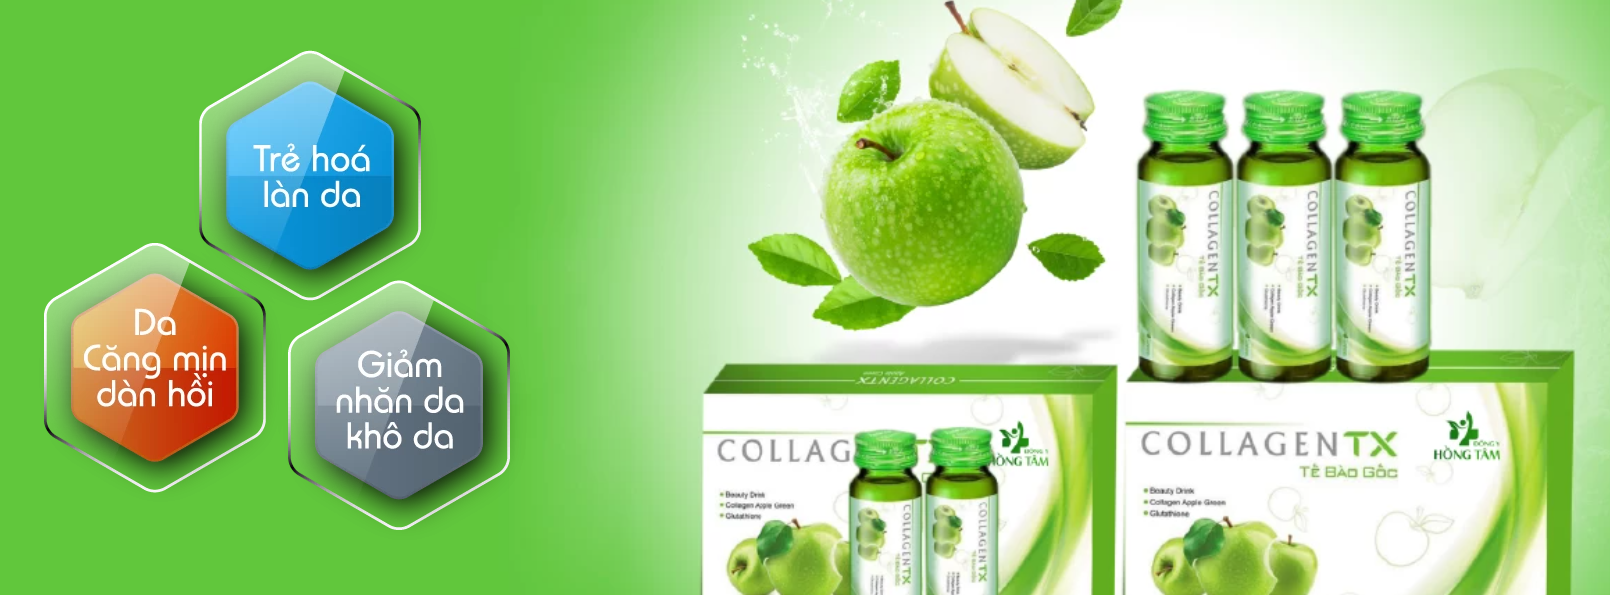 Nước Uống Collagen Edally Và Collagen TX – Lựa Chọn Nào Tốt?